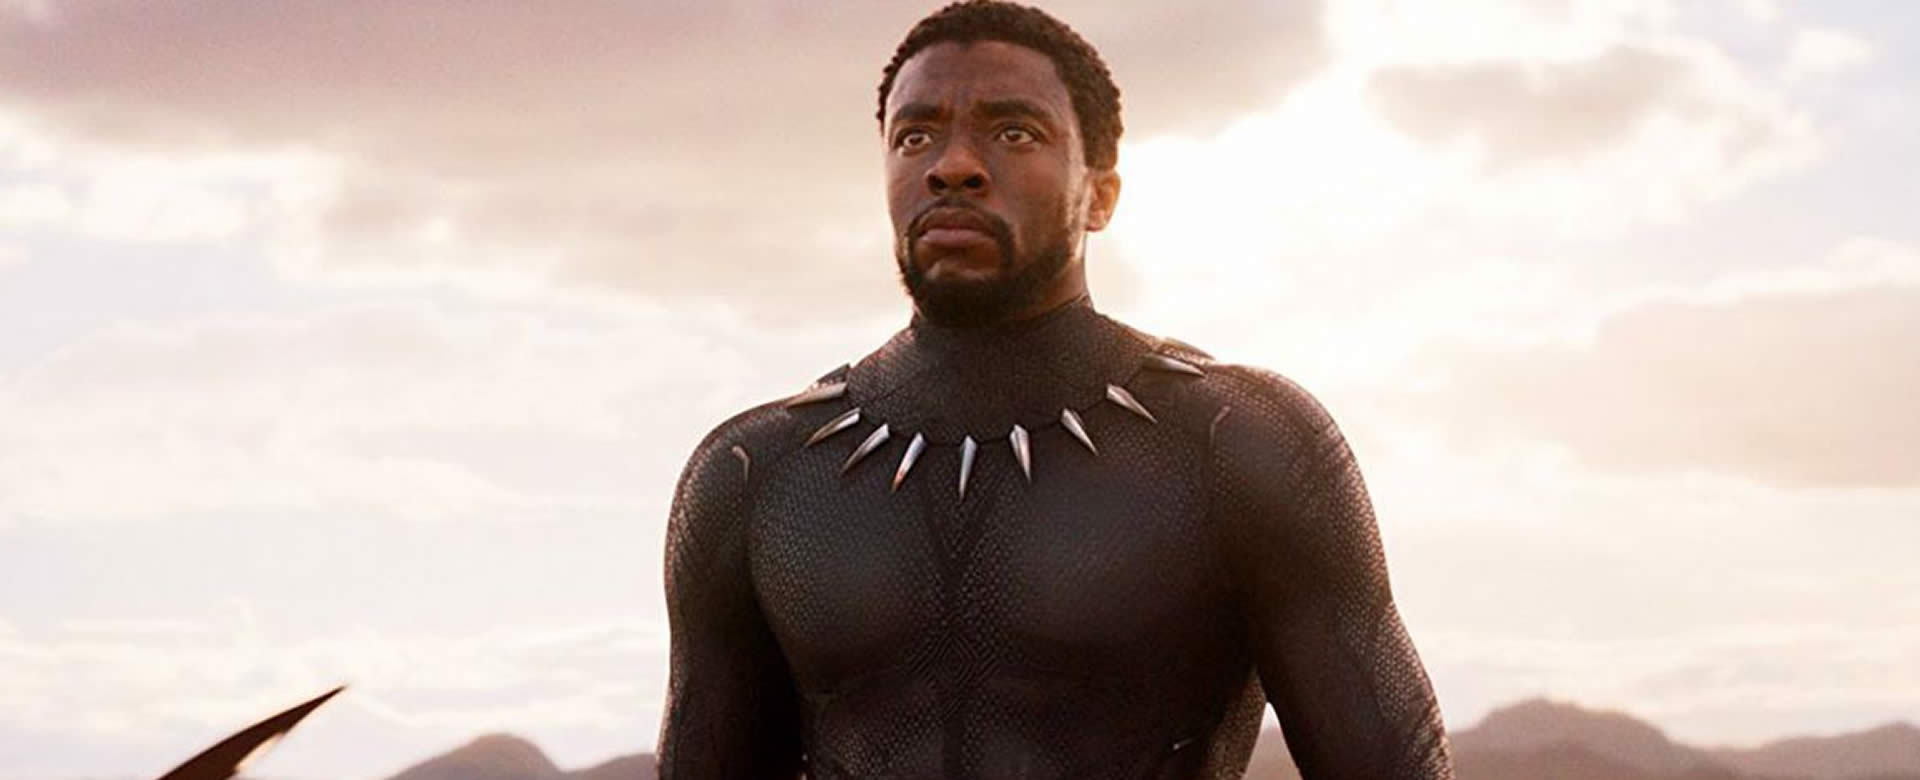 Fallece a sus 43 años Chadwick Boseman, protagonista de Black Panther